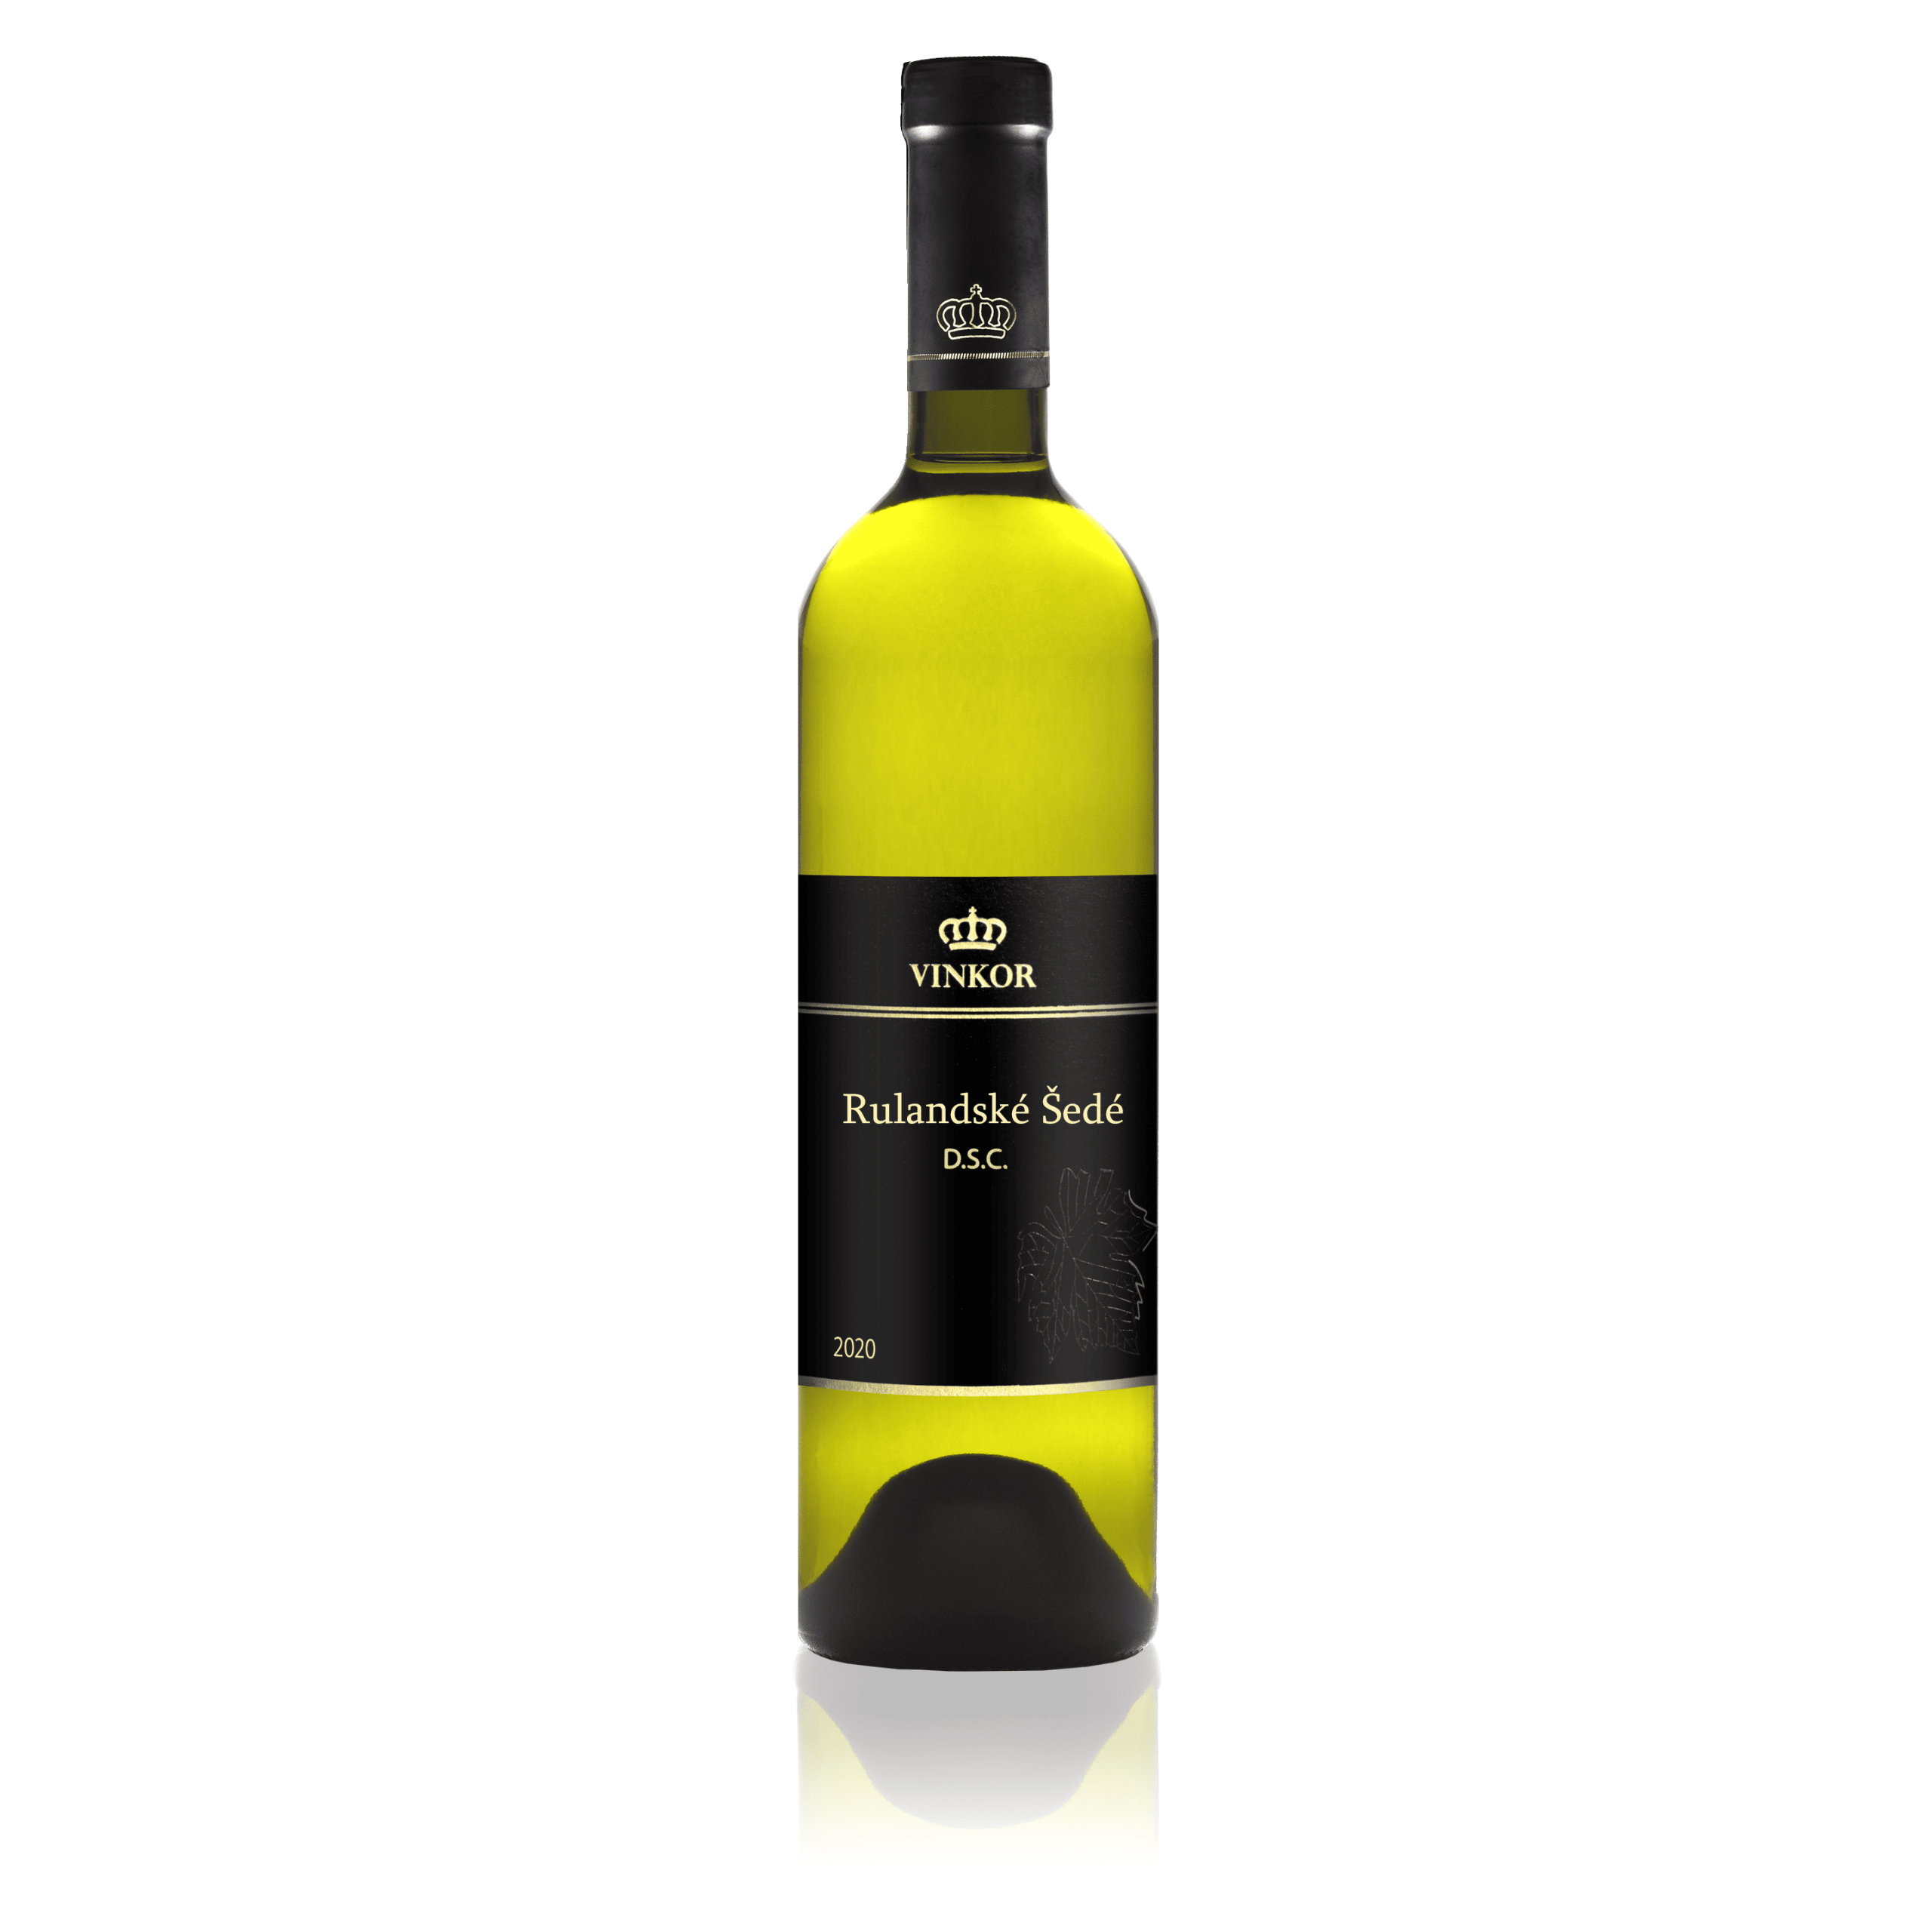 Biele víno Rulandské šedé 2020 z rodinného vinárstva Vinkor z Malých Karpát